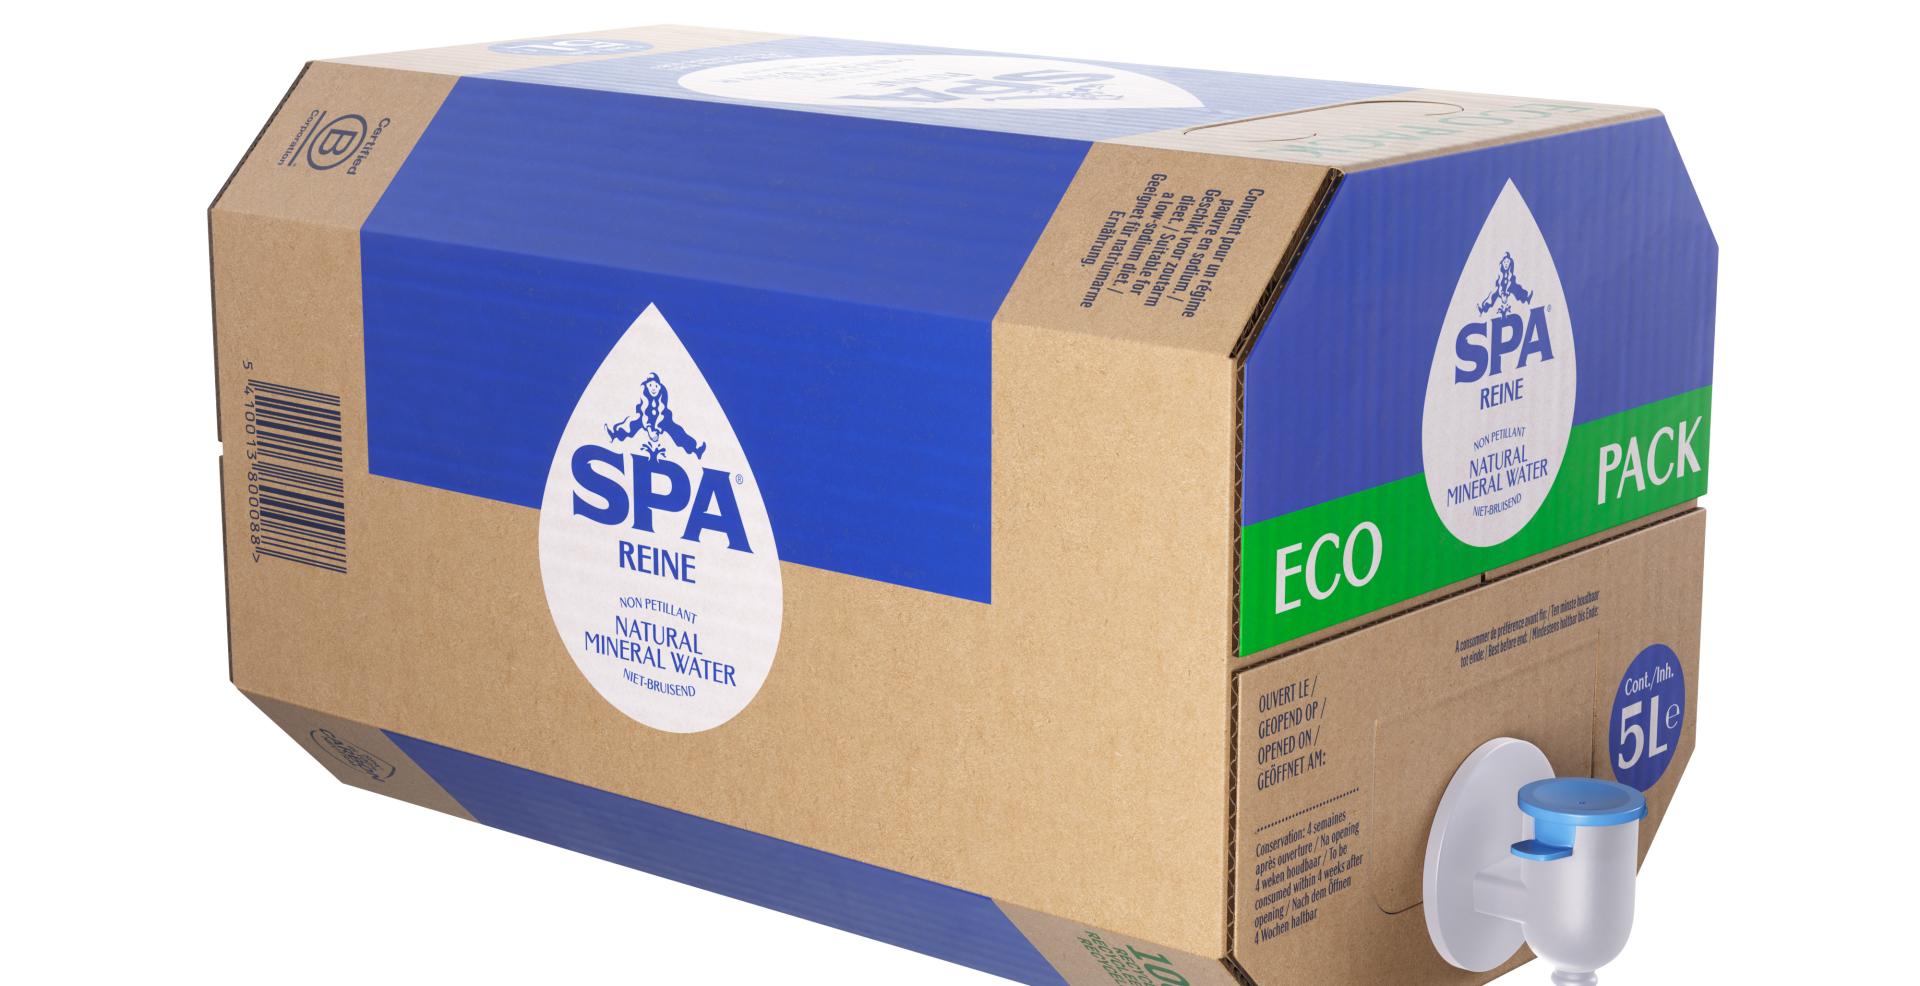 SPA REINE innoveert met Eco Pack, een bijzonder praktische en milieuvriendelijke liter-verpakking | Spadel